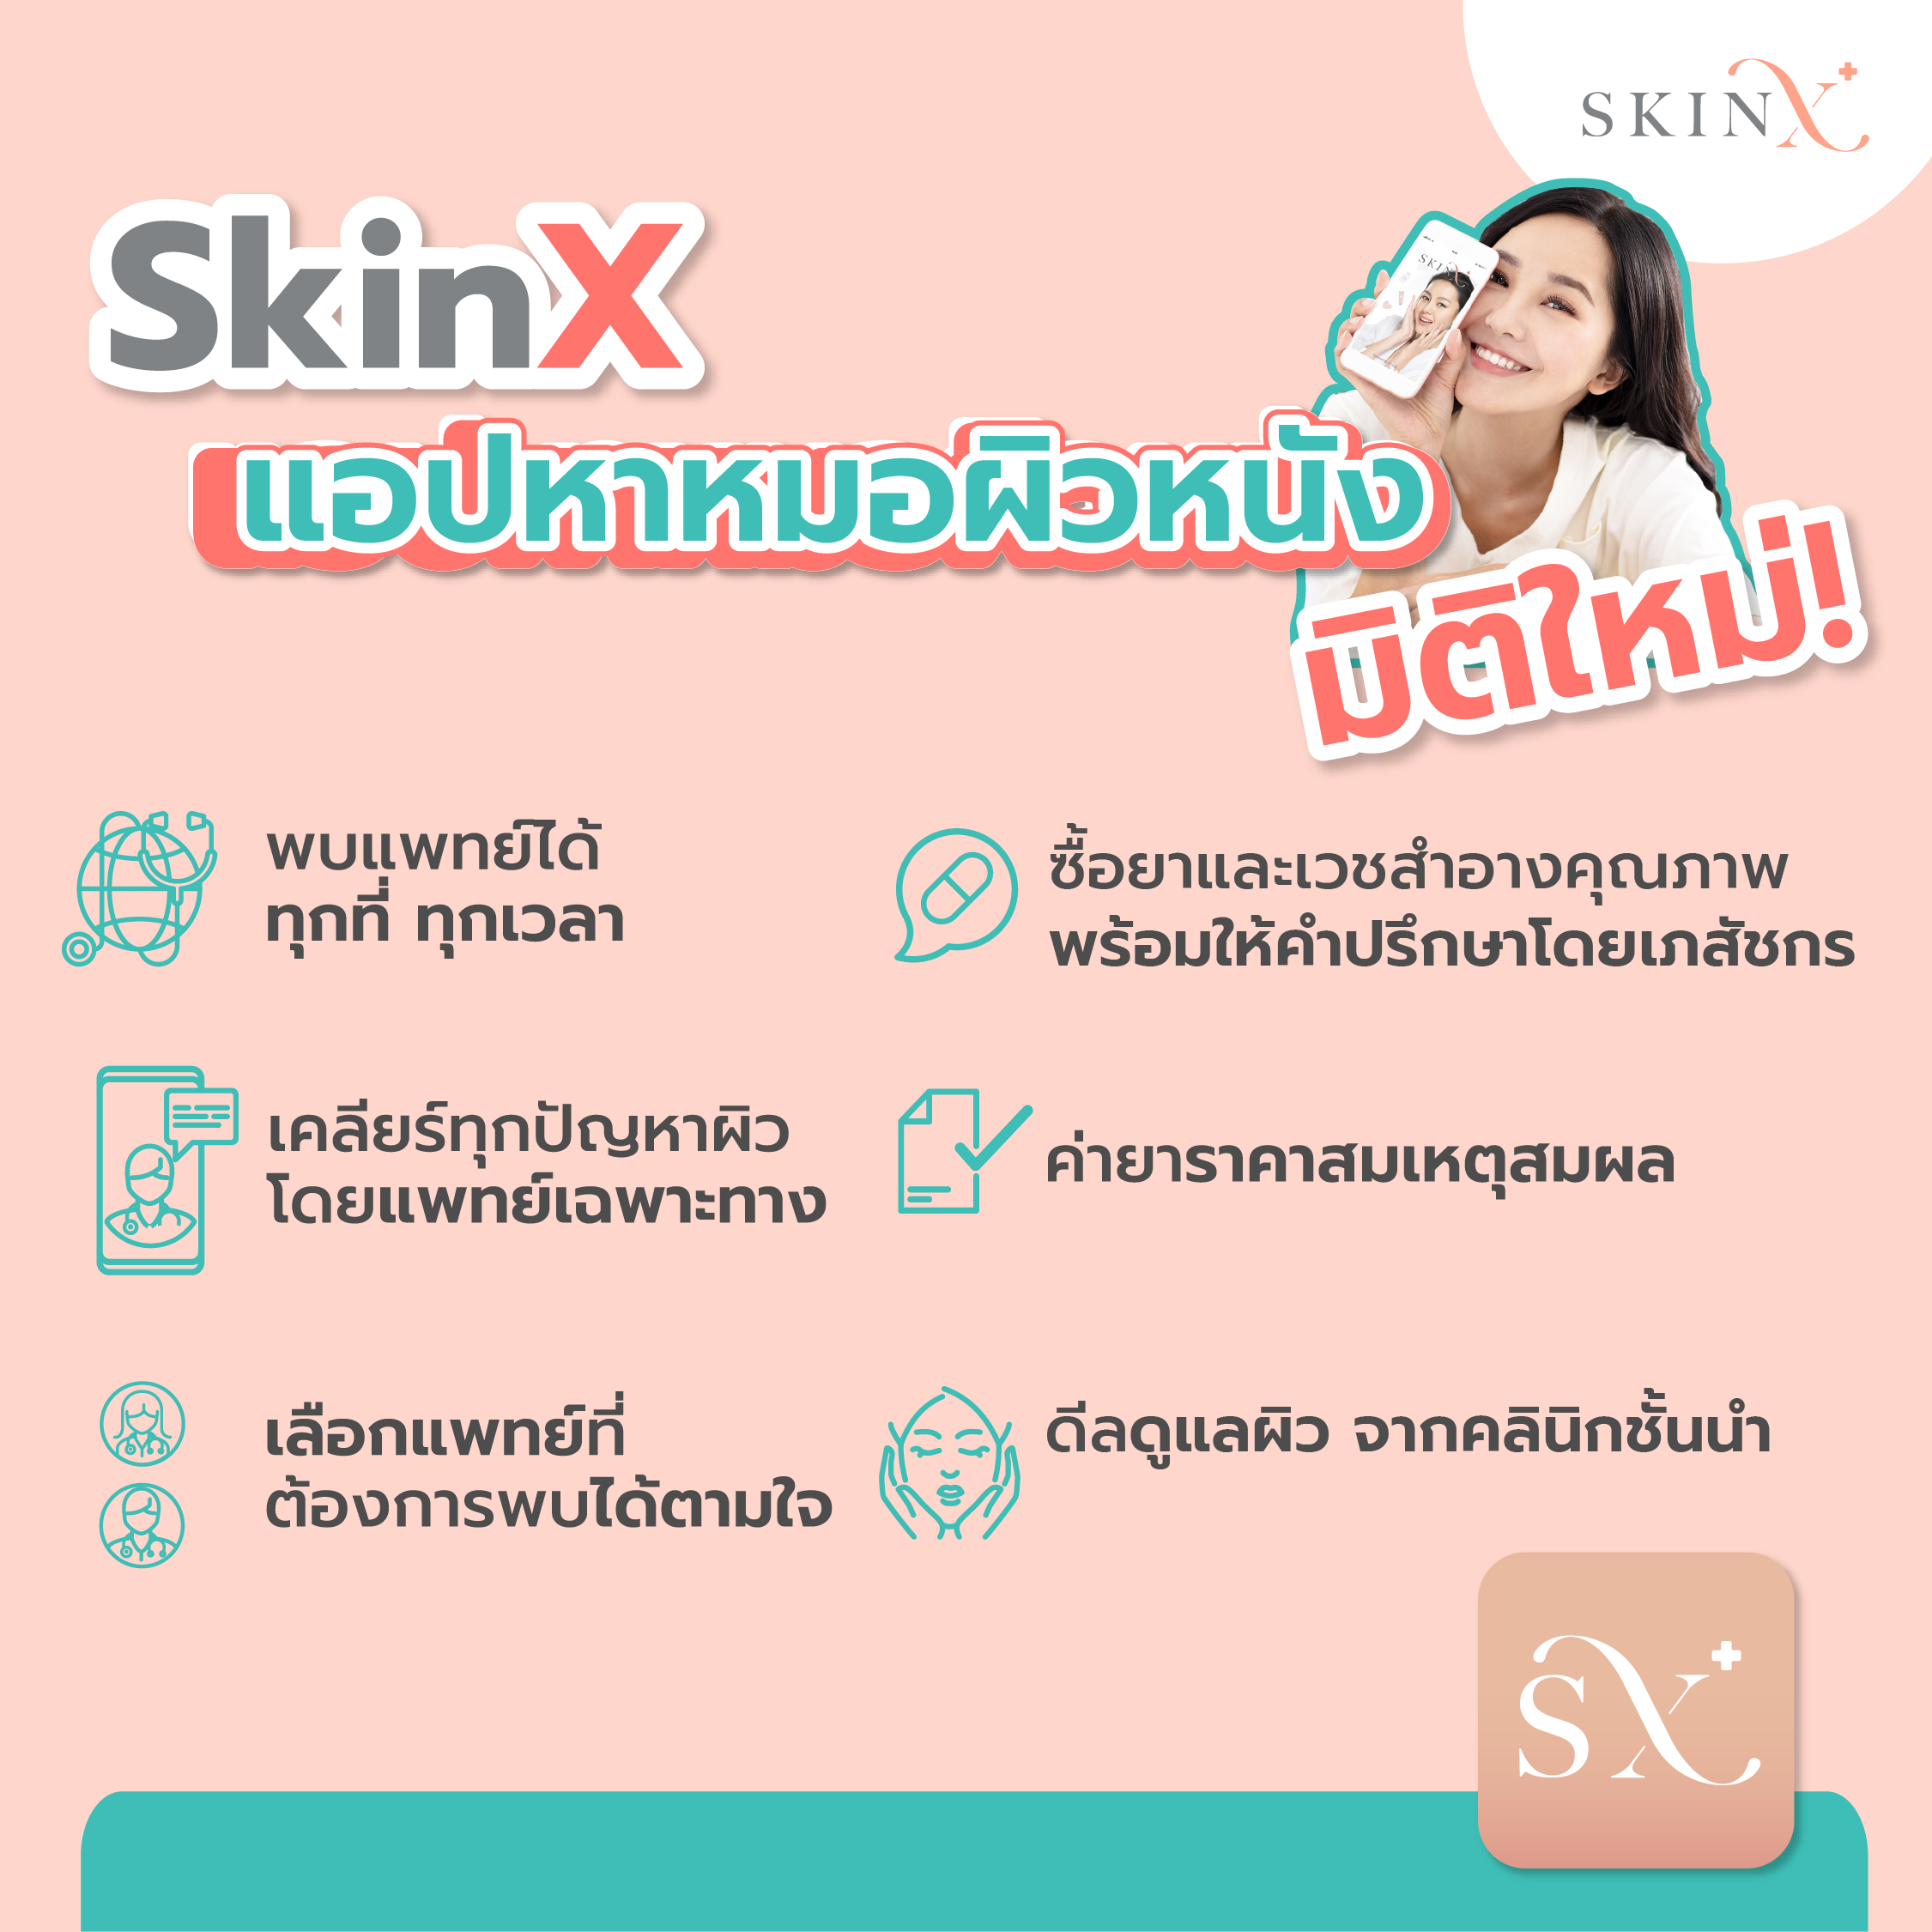 คำอธิบายเพิ่มเติมเกี่ยวกับ SkinX E-Vo ส่วนลด 500 บาท สำหรับทุกการใช้จ่ายใน SkinX